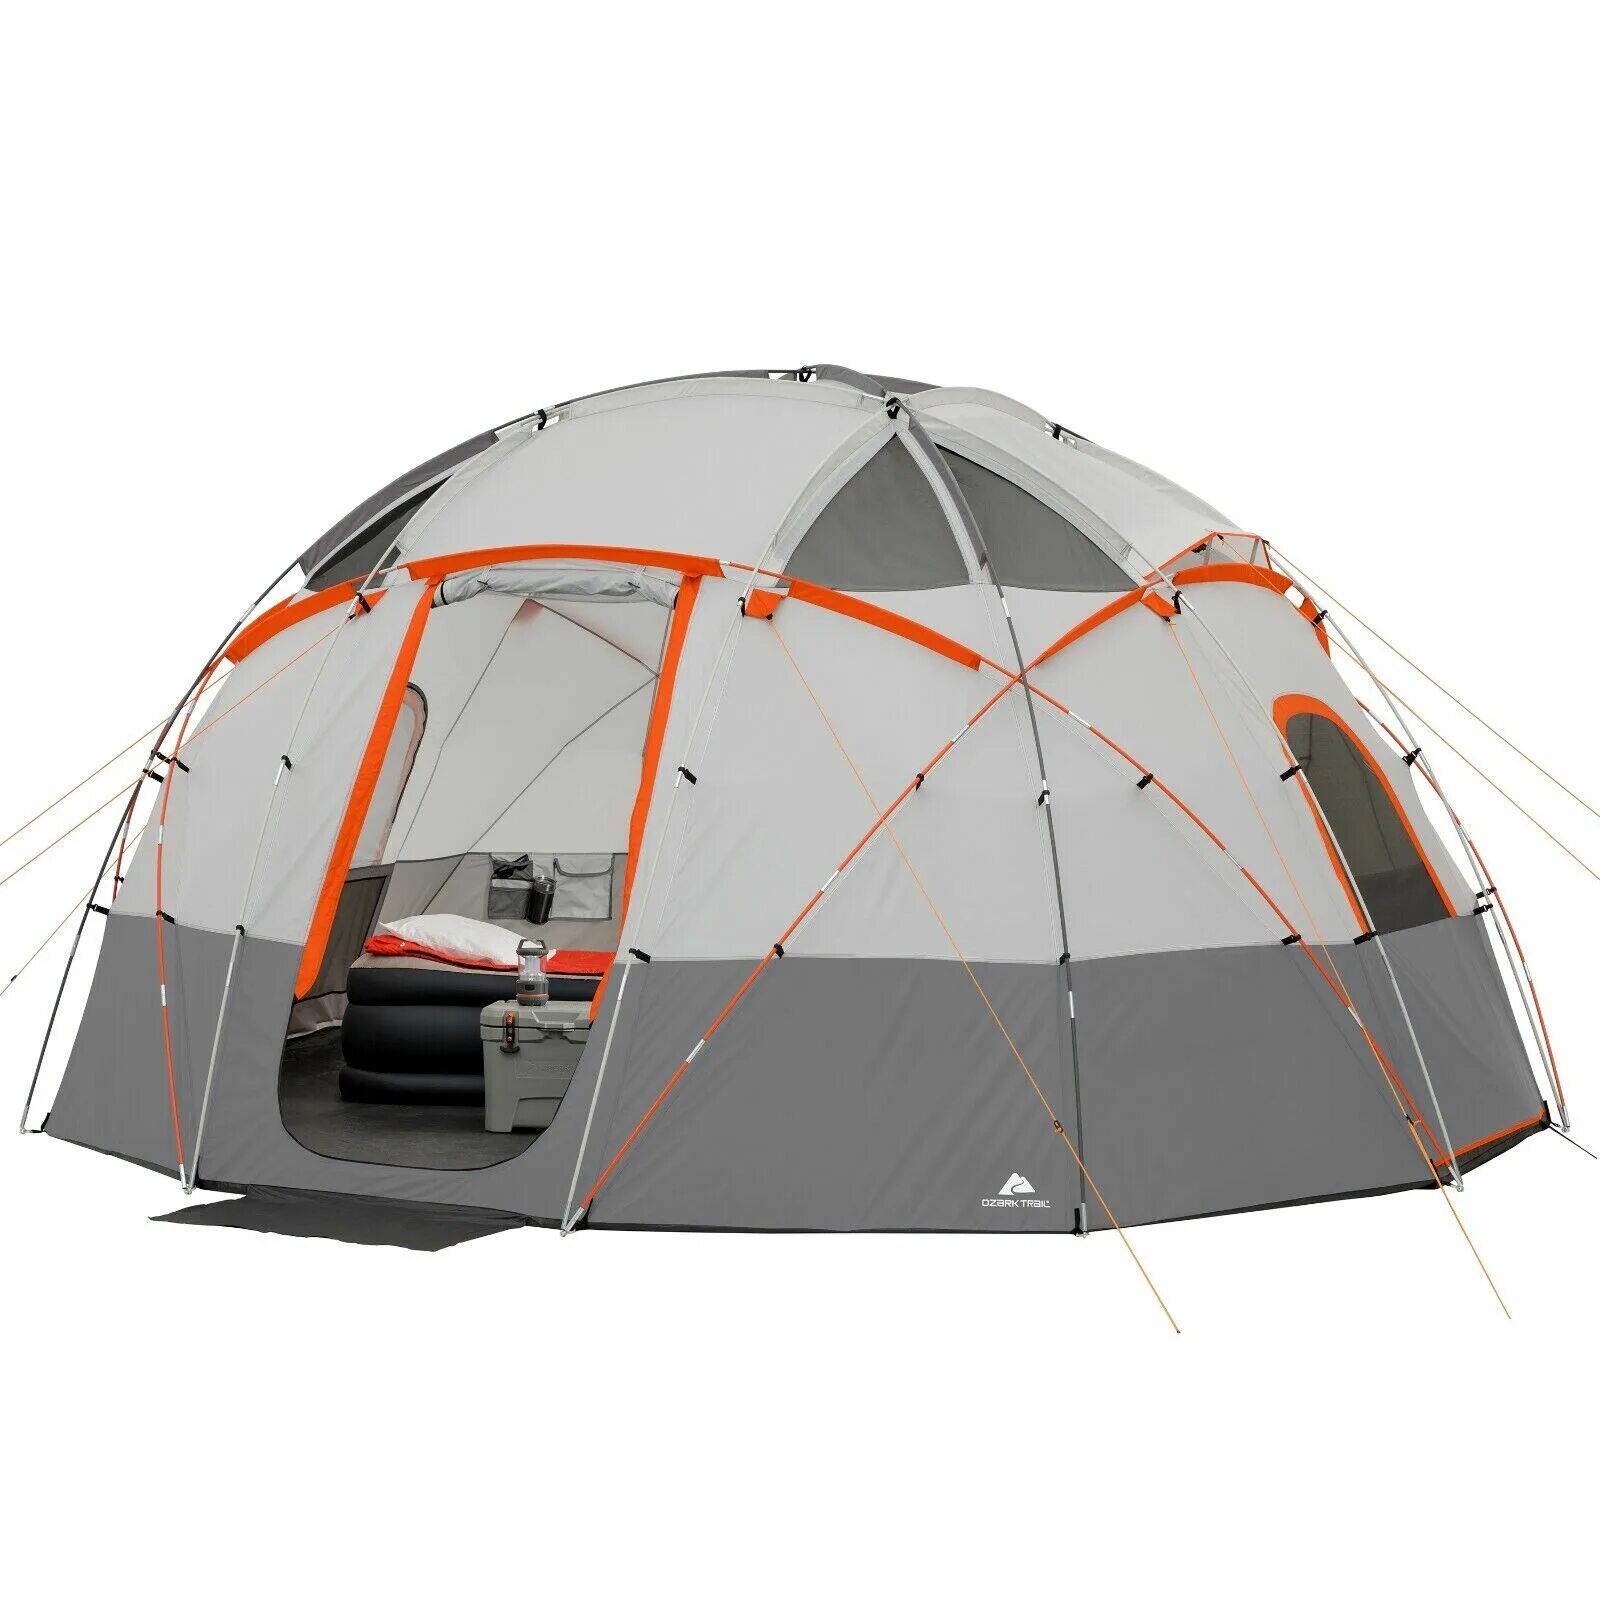 Ozark Trail палатка. Палатка Basecamp Tent. Палатка Ozark Trail 4 места. Палатка Cabin Dome oz-10.